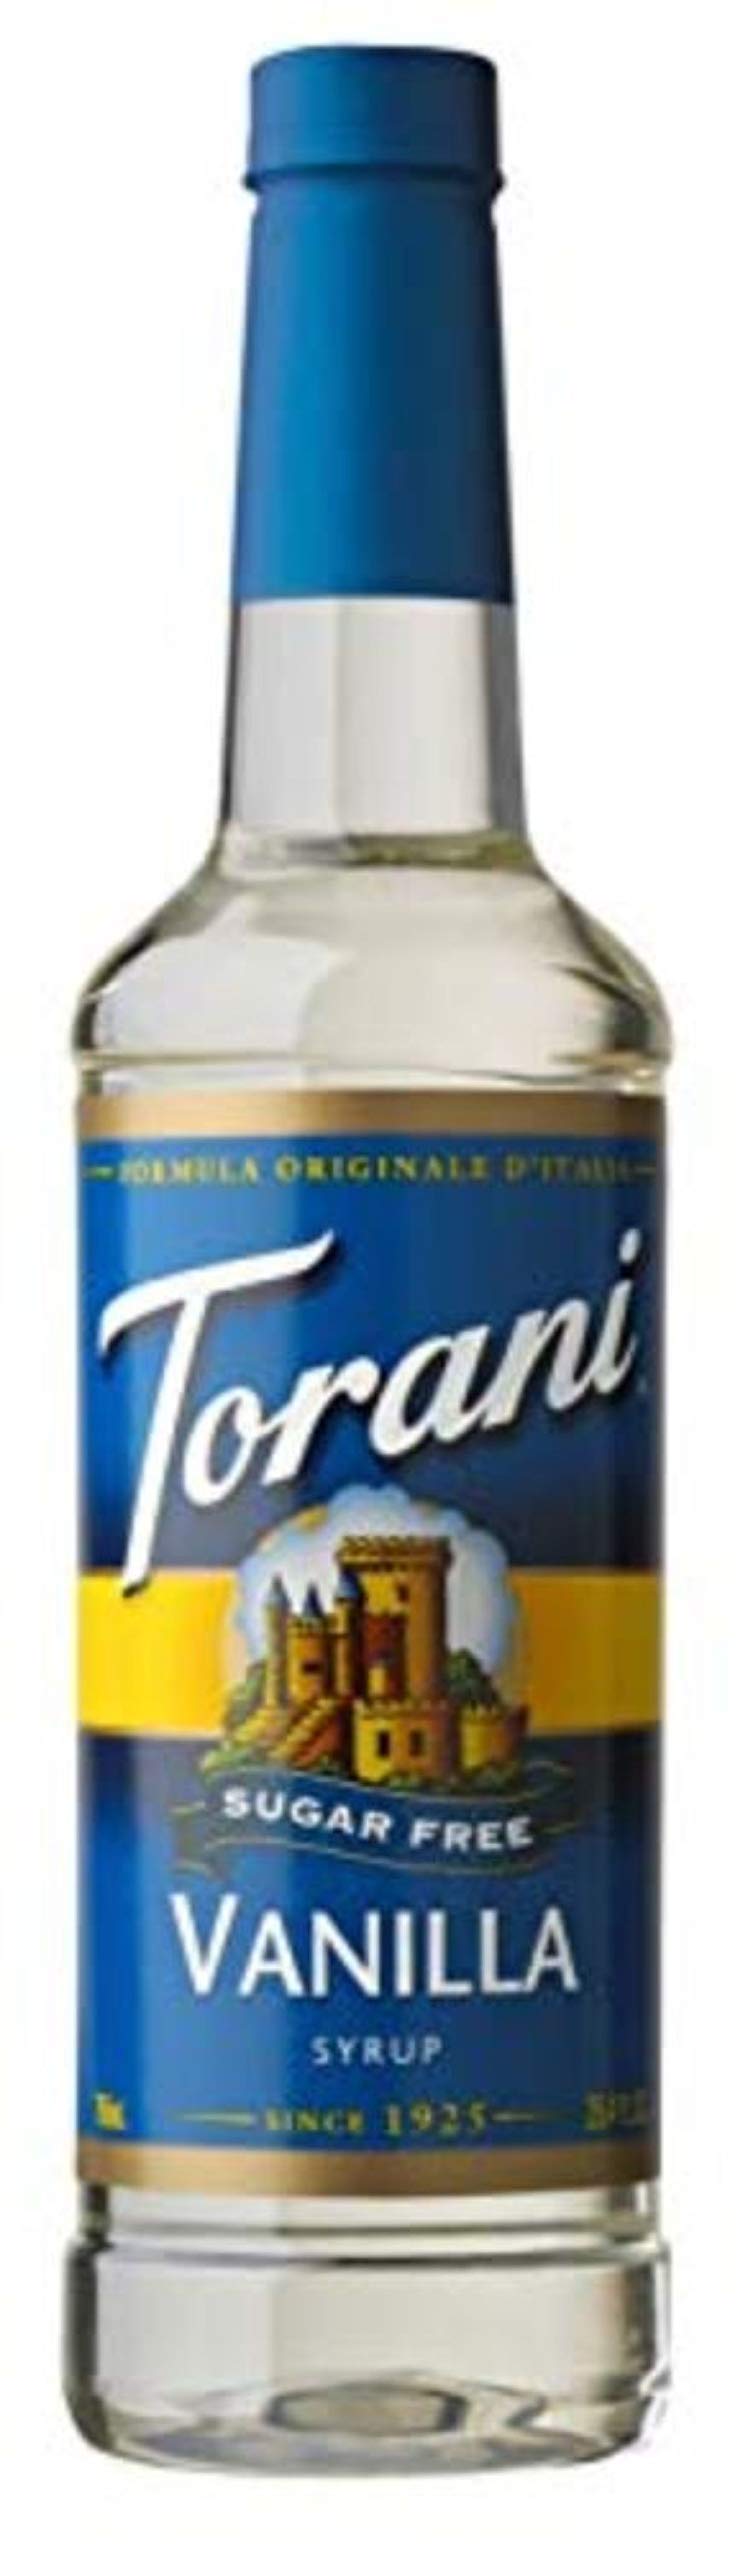 Does Torani Sugar Free Syrup Break a Fast?